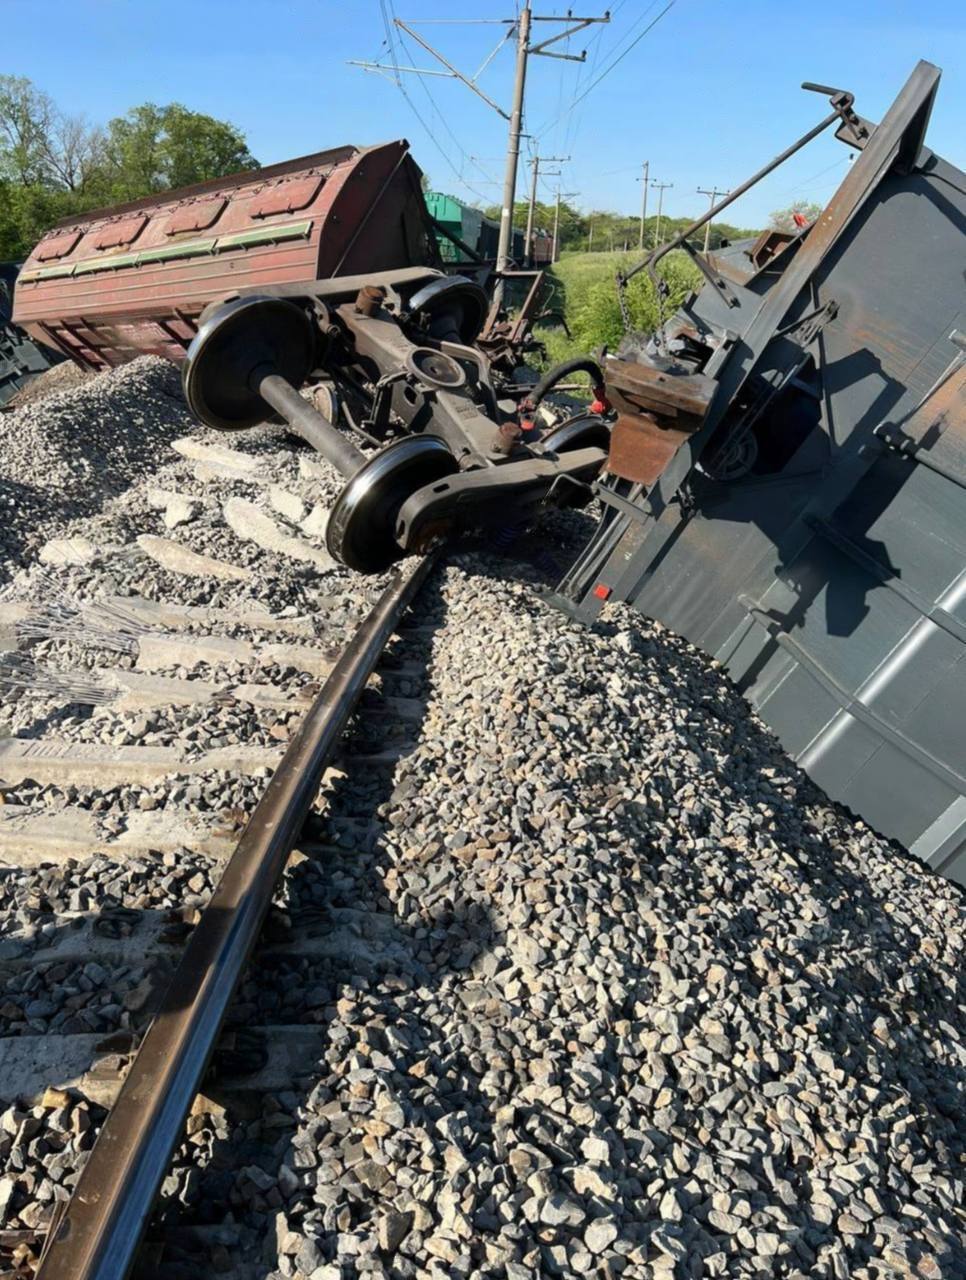 "Рельсы устали": в ГУР прокомментировали взрыв на железной дороге в Крыму, по которой перебрасывали оружие